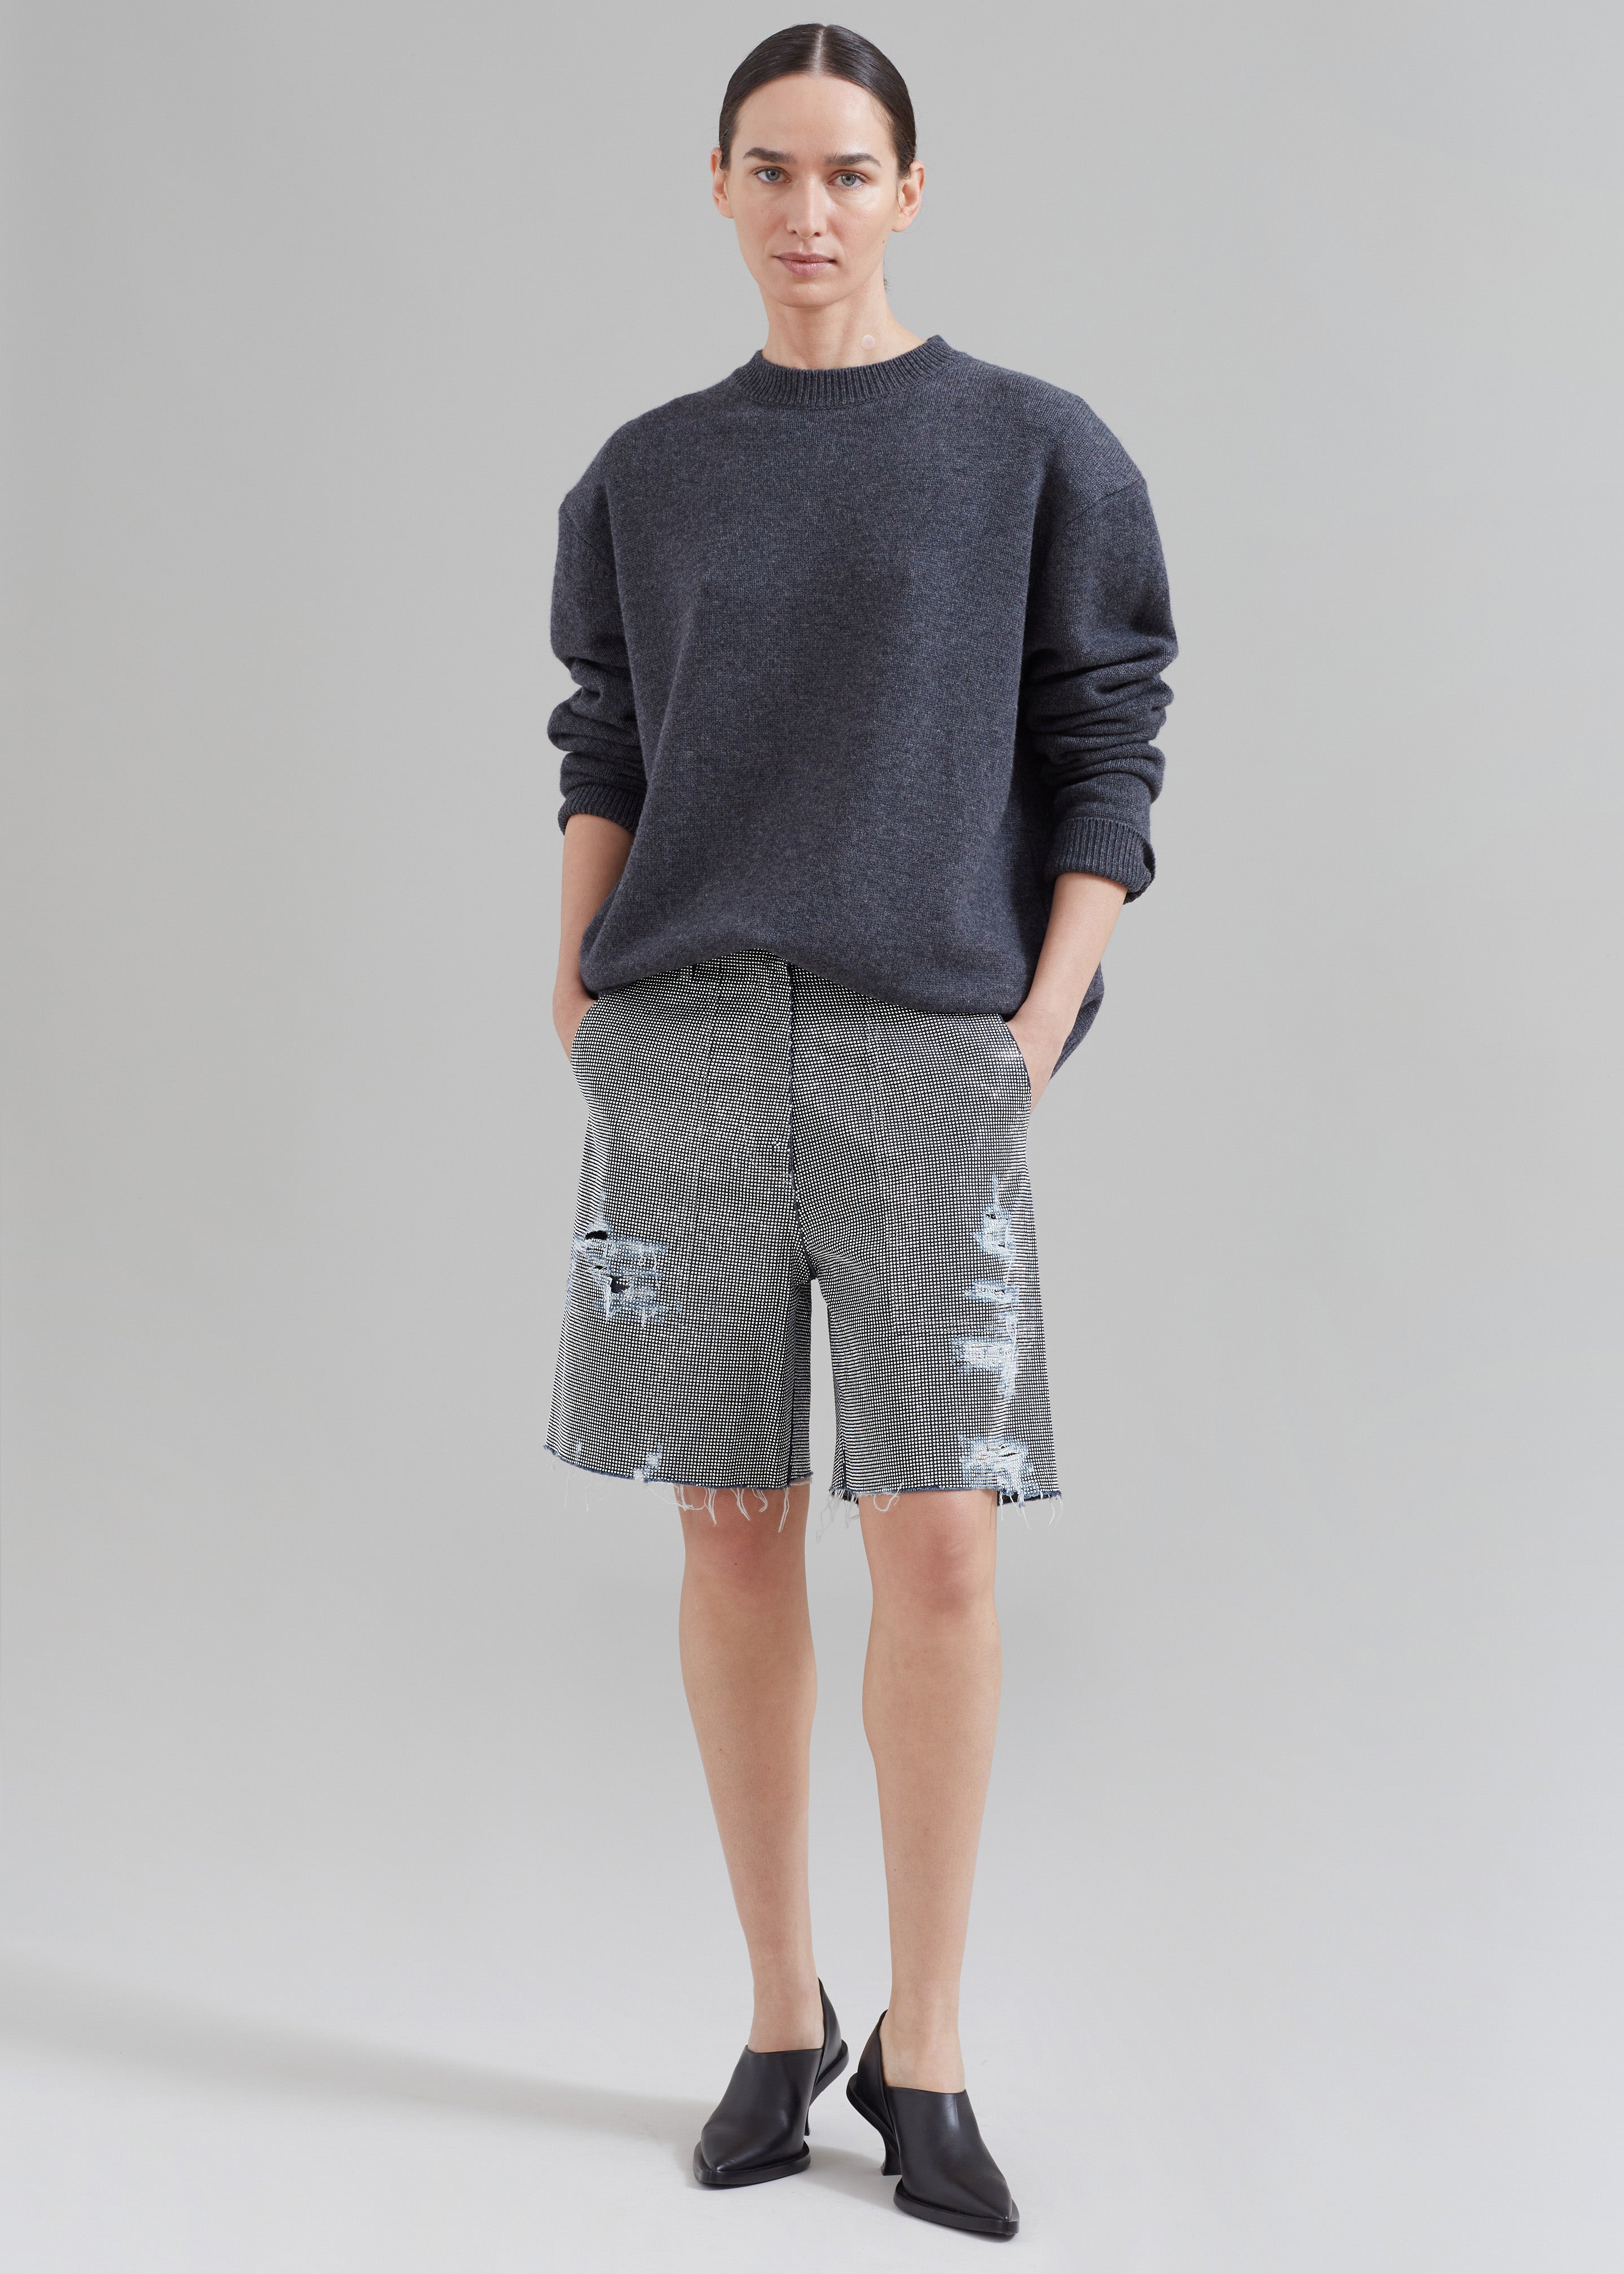 JW Anderson Studded Workwear Shorts - Indigo/Silver - 6